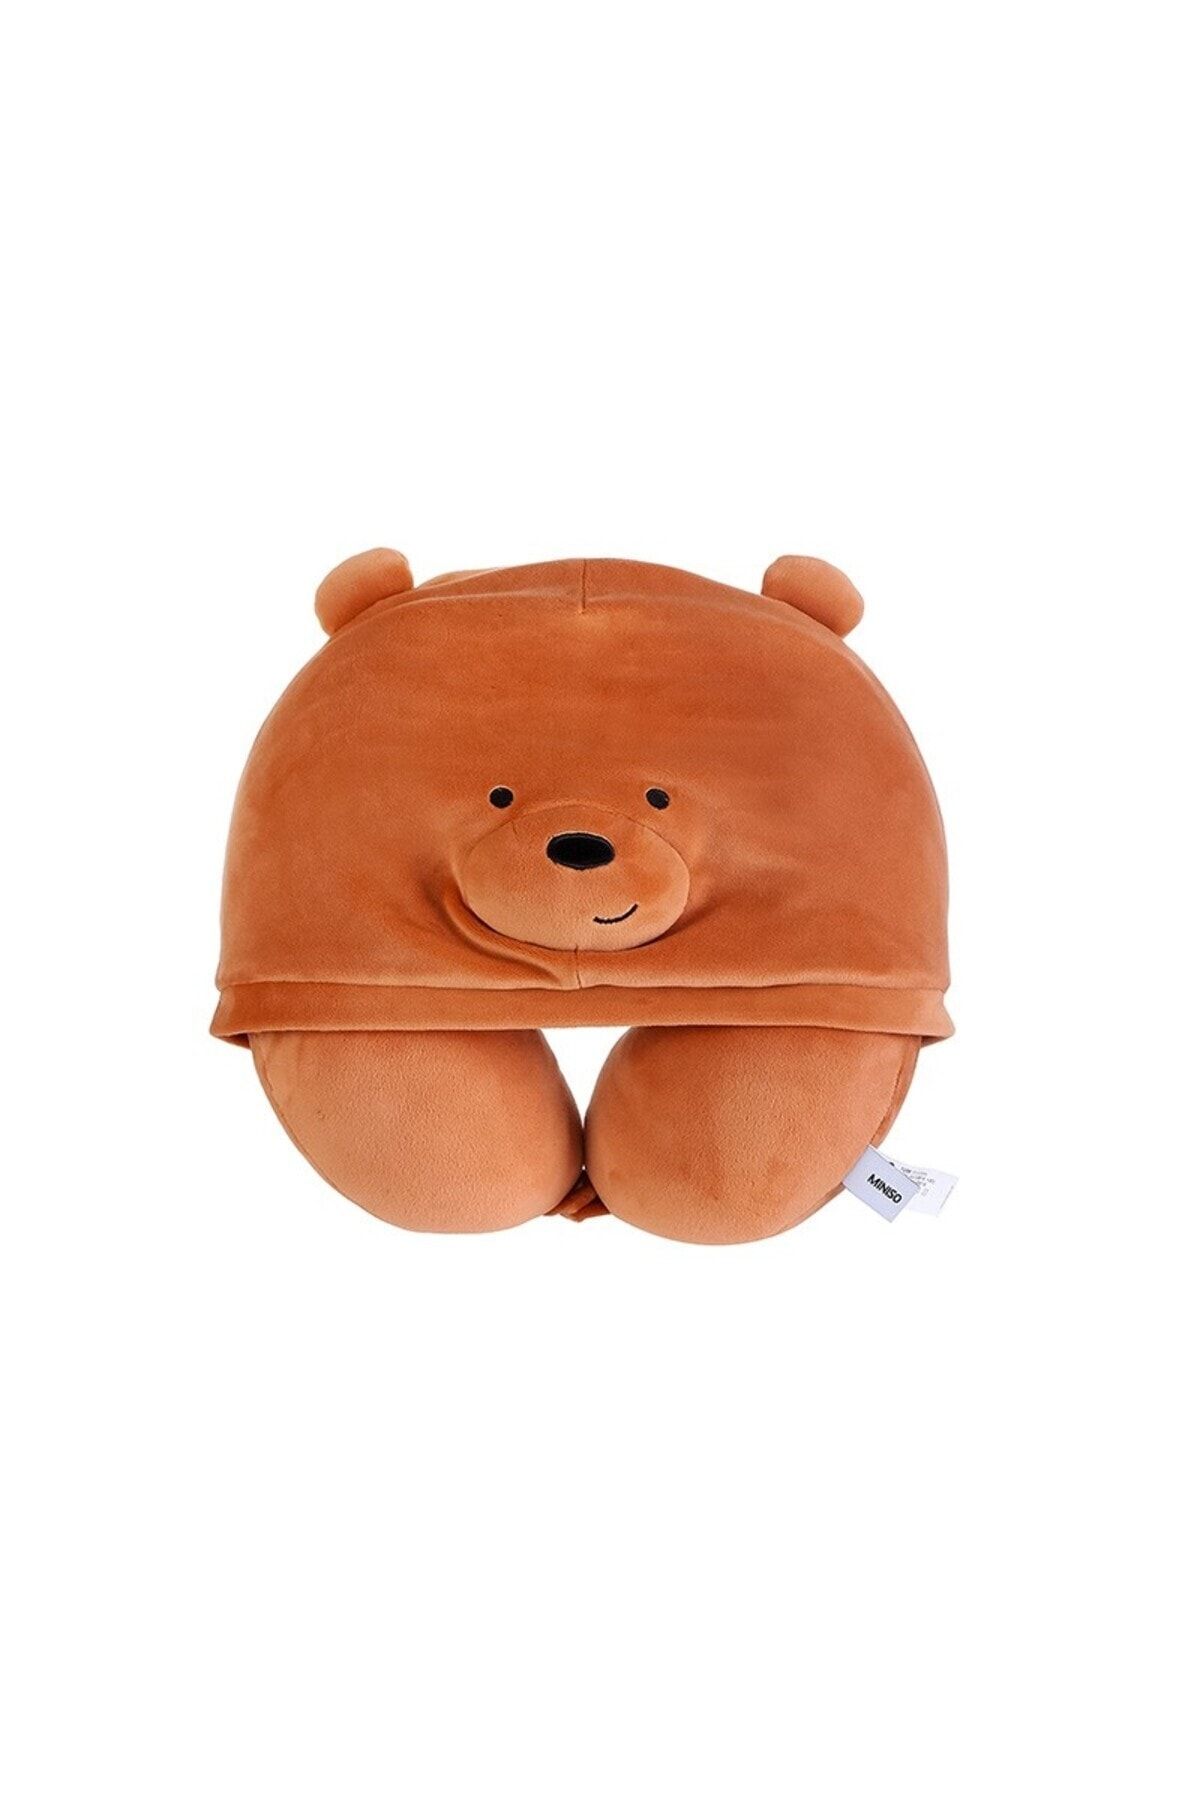 Miniso We Bare Bears Lisanslı Kapişonlu Boyun Yastığı - Boz Ayı